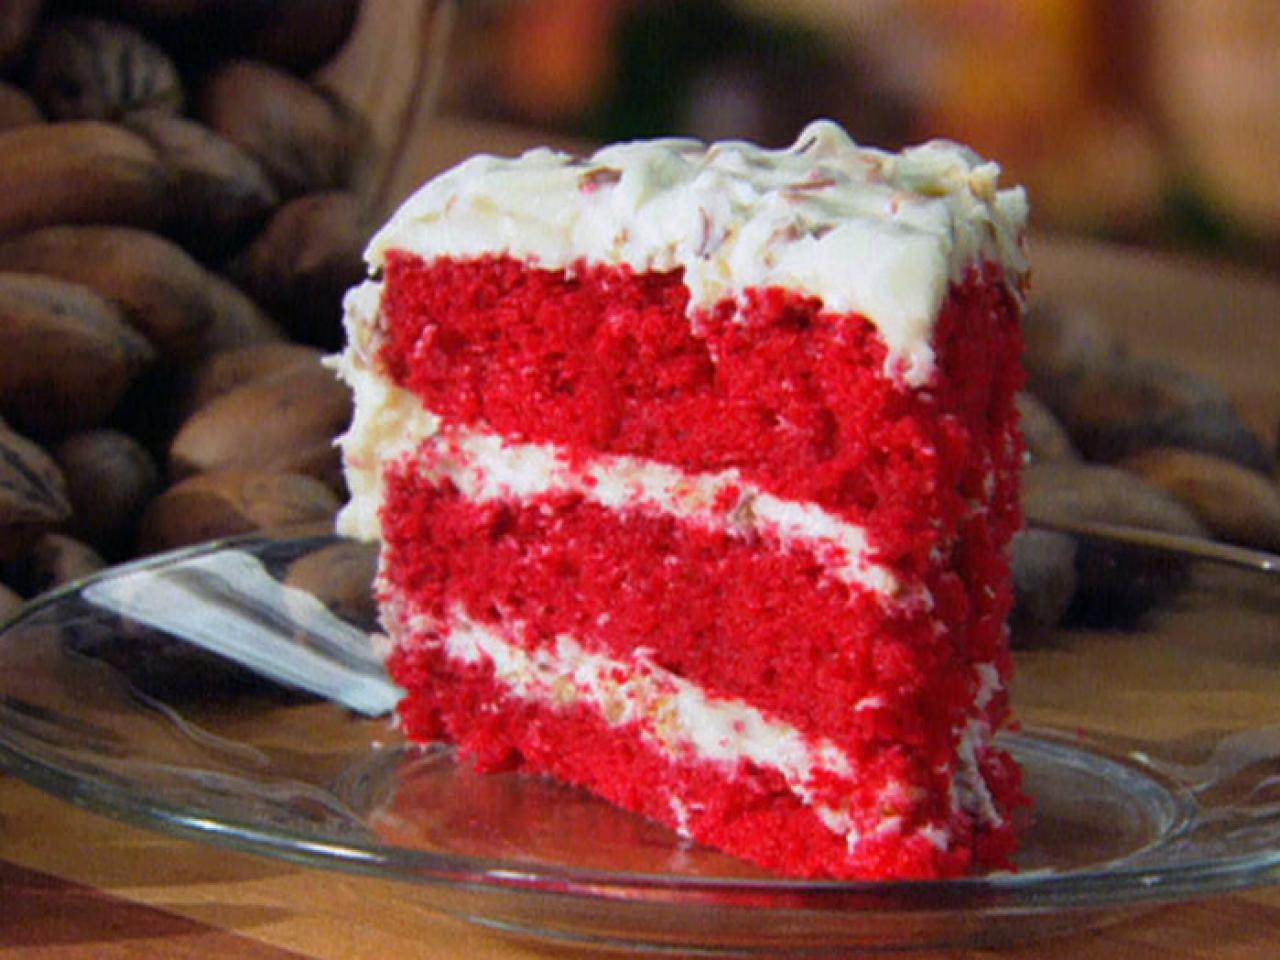 Best Red velvet birthday cake ideas on Pinterest | Easy cake decorating, Velvet  cake recipes, Red velvet cake recipe